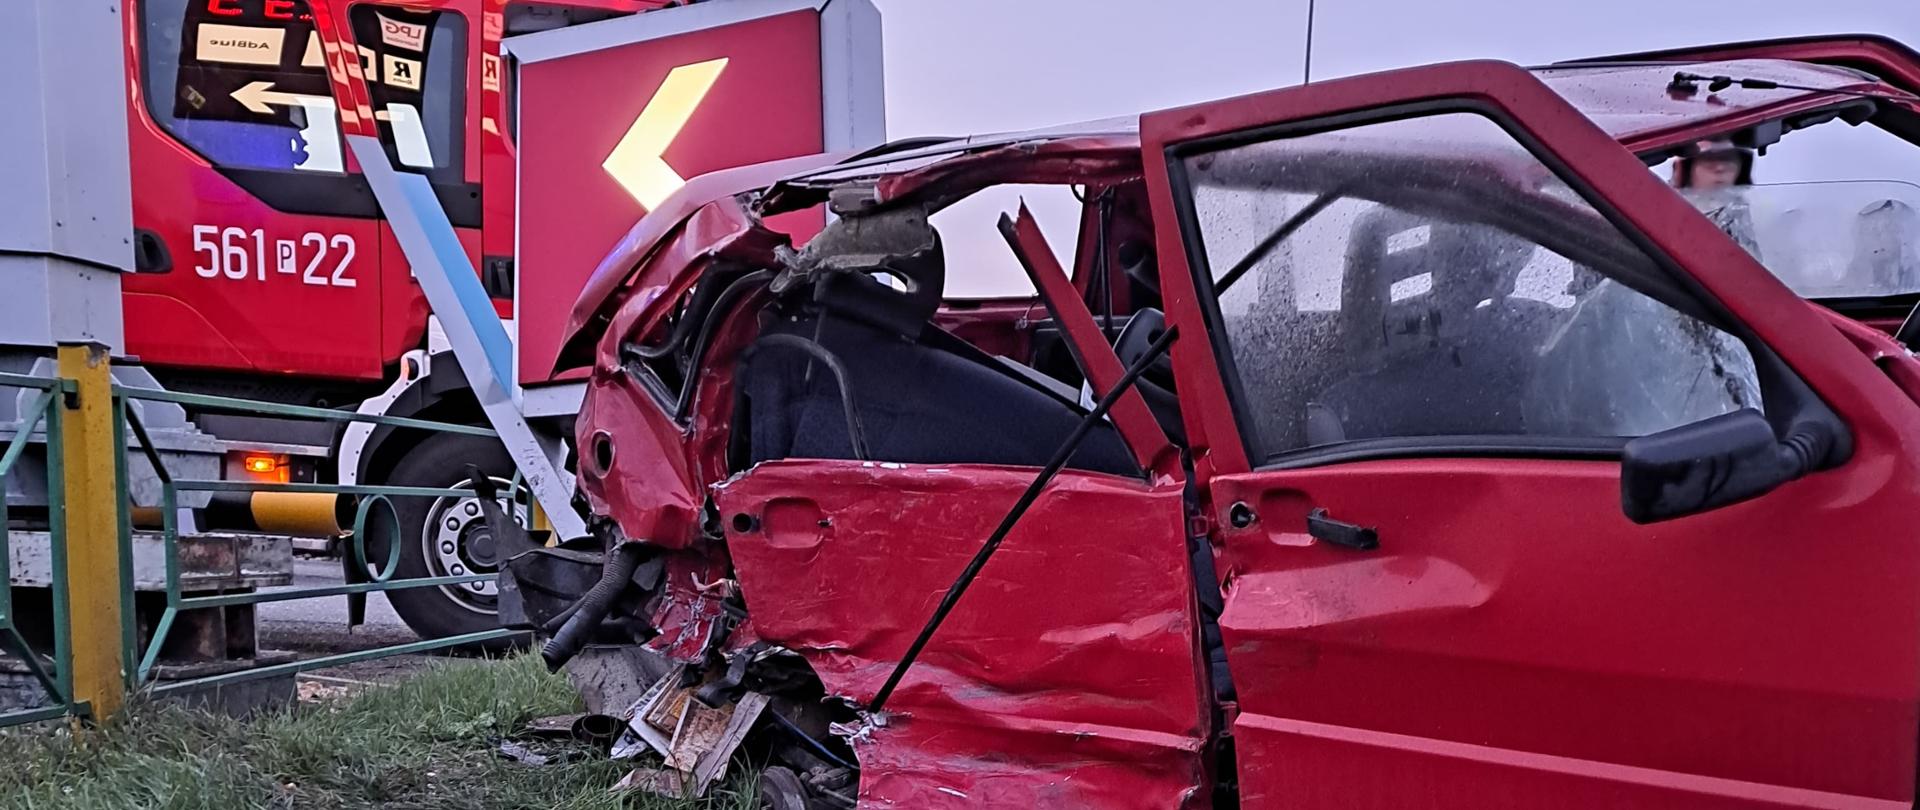 Czerwony samochód osoby ze zniszczonym bokiem stoi na uszkodzonym mostku przejazdowym za nim widoczny wóz strażacki